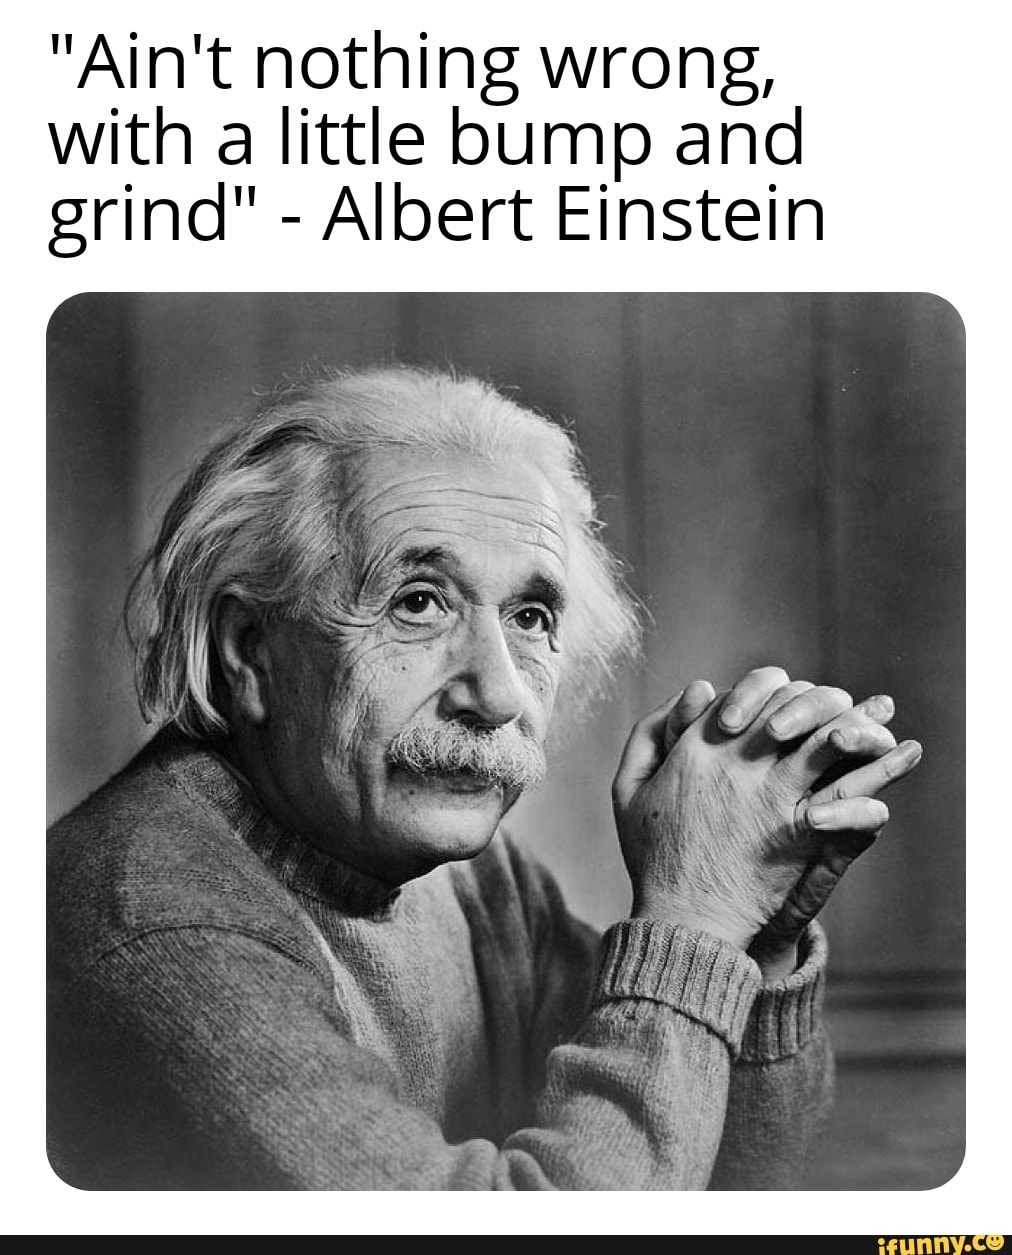 Альберт Эйнштейн поколение идиотов